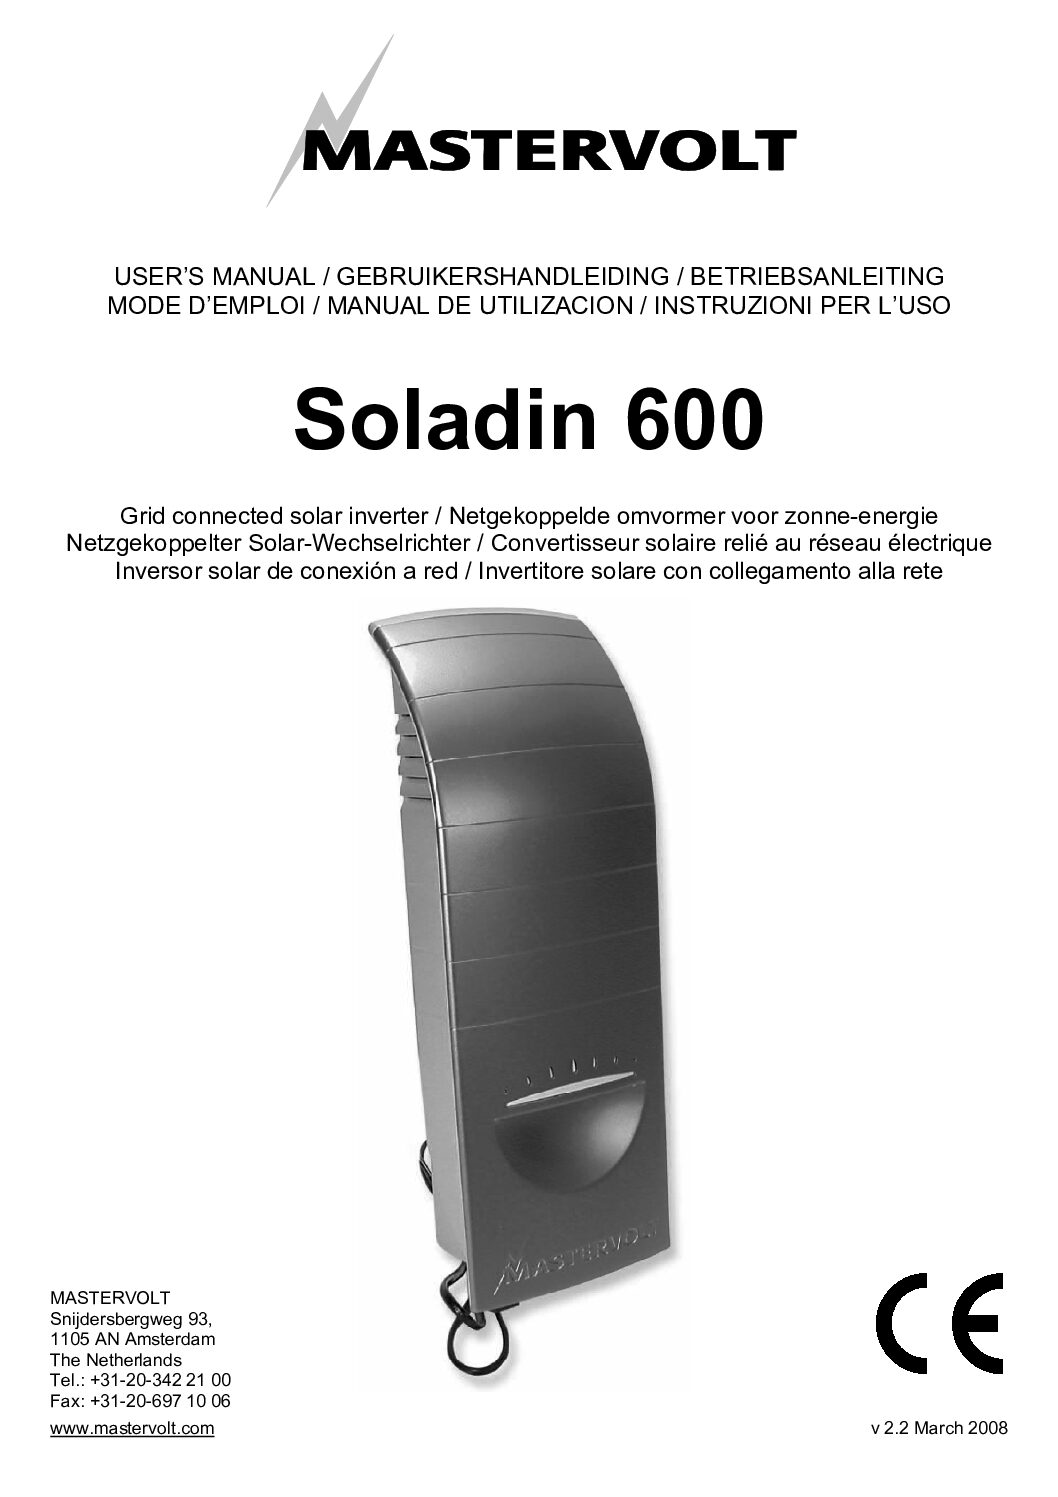 Mastervolt Soladin 600 Bedienungsanleitung